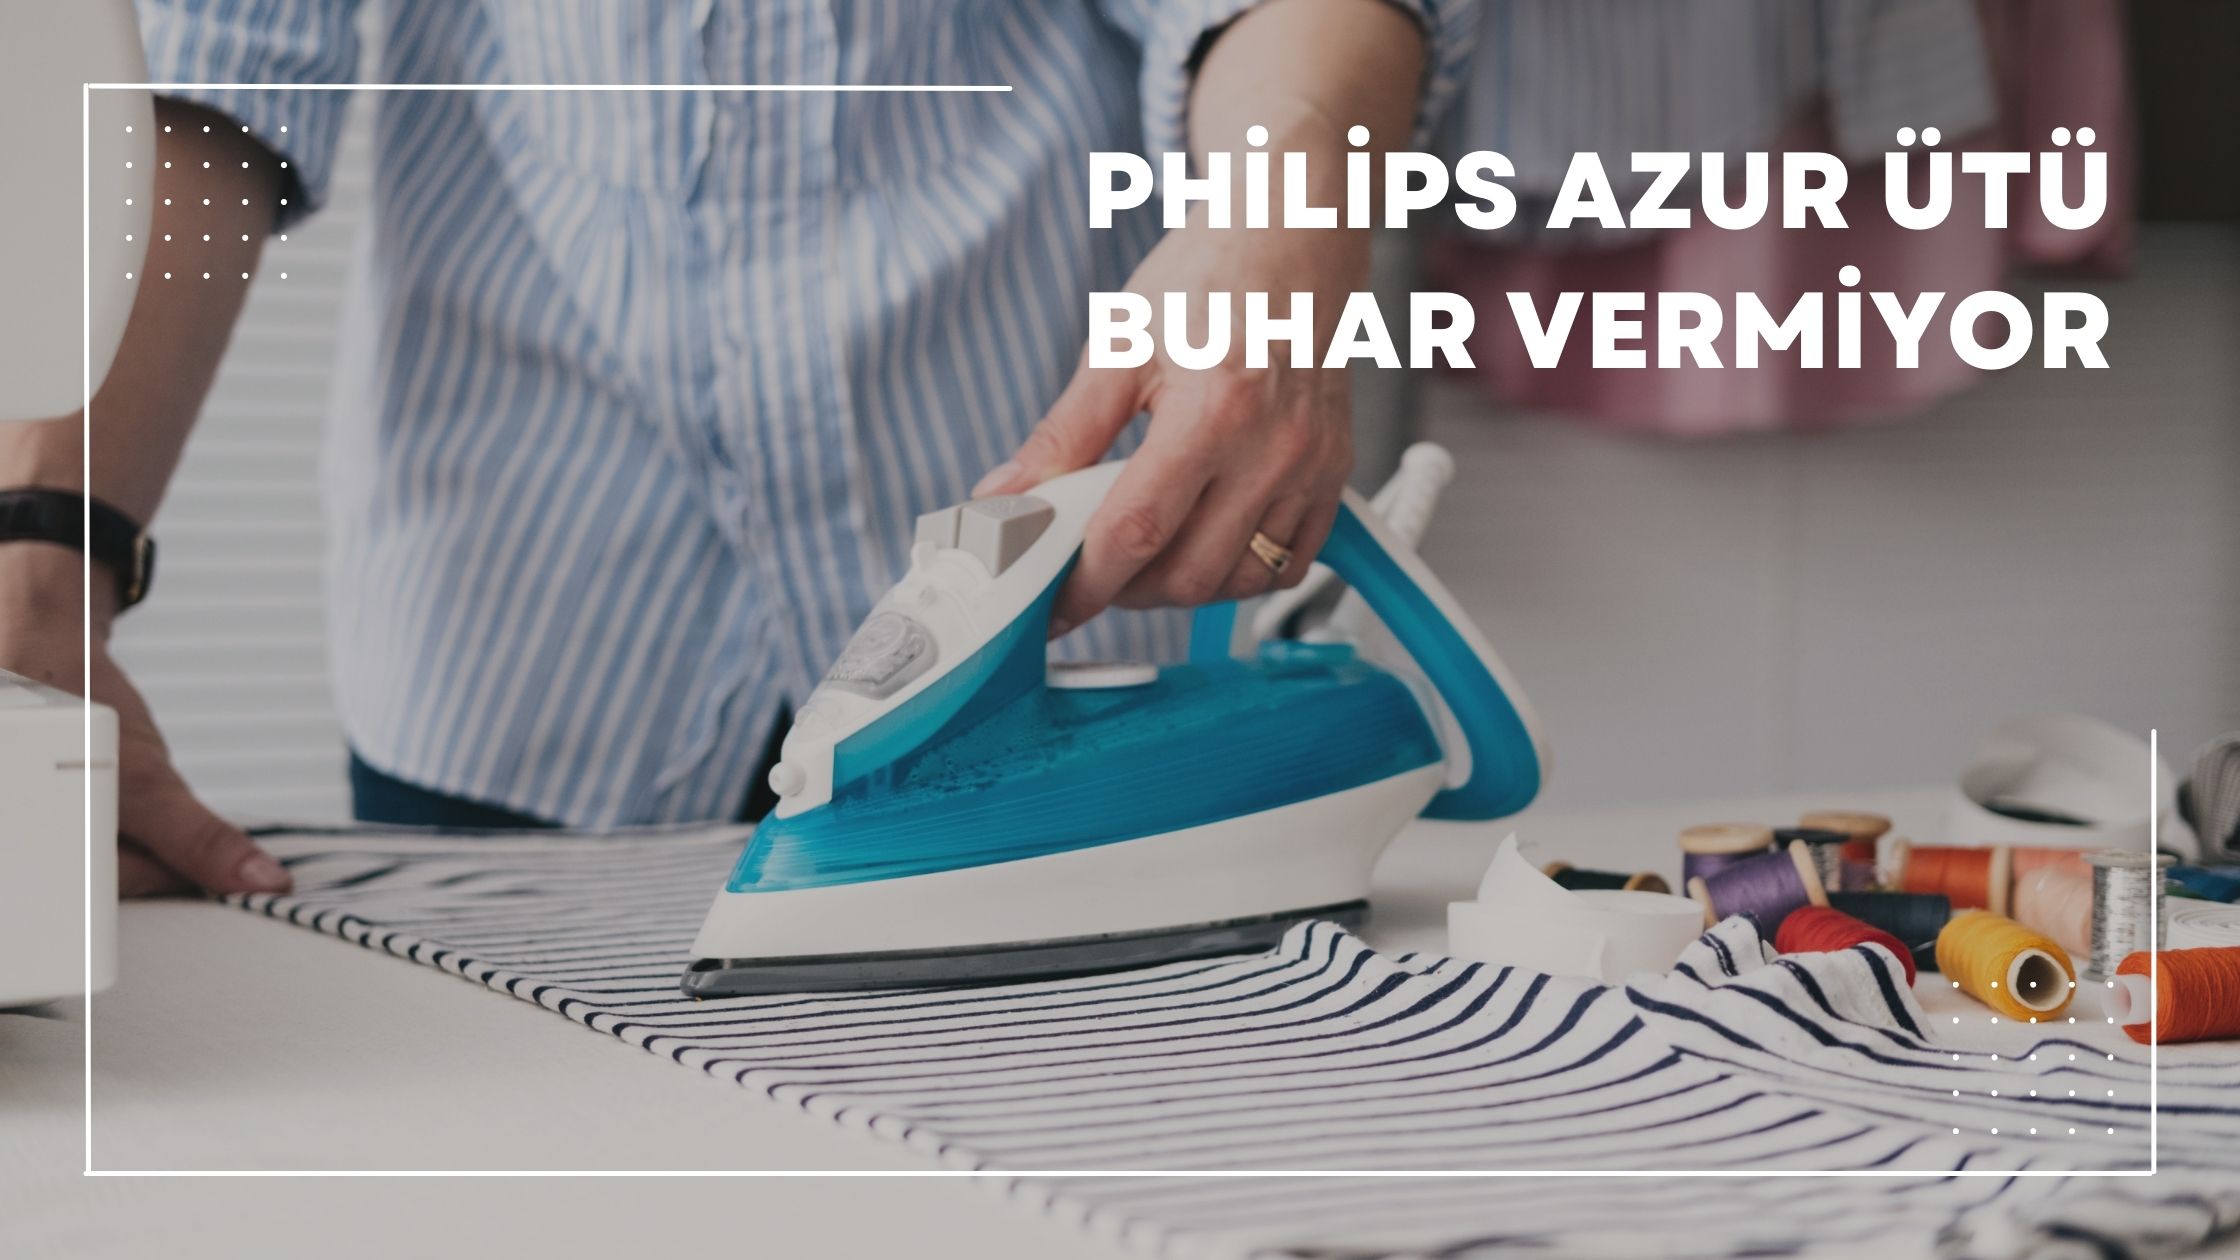 Philips Azur Ütü Buhar Vermiyor